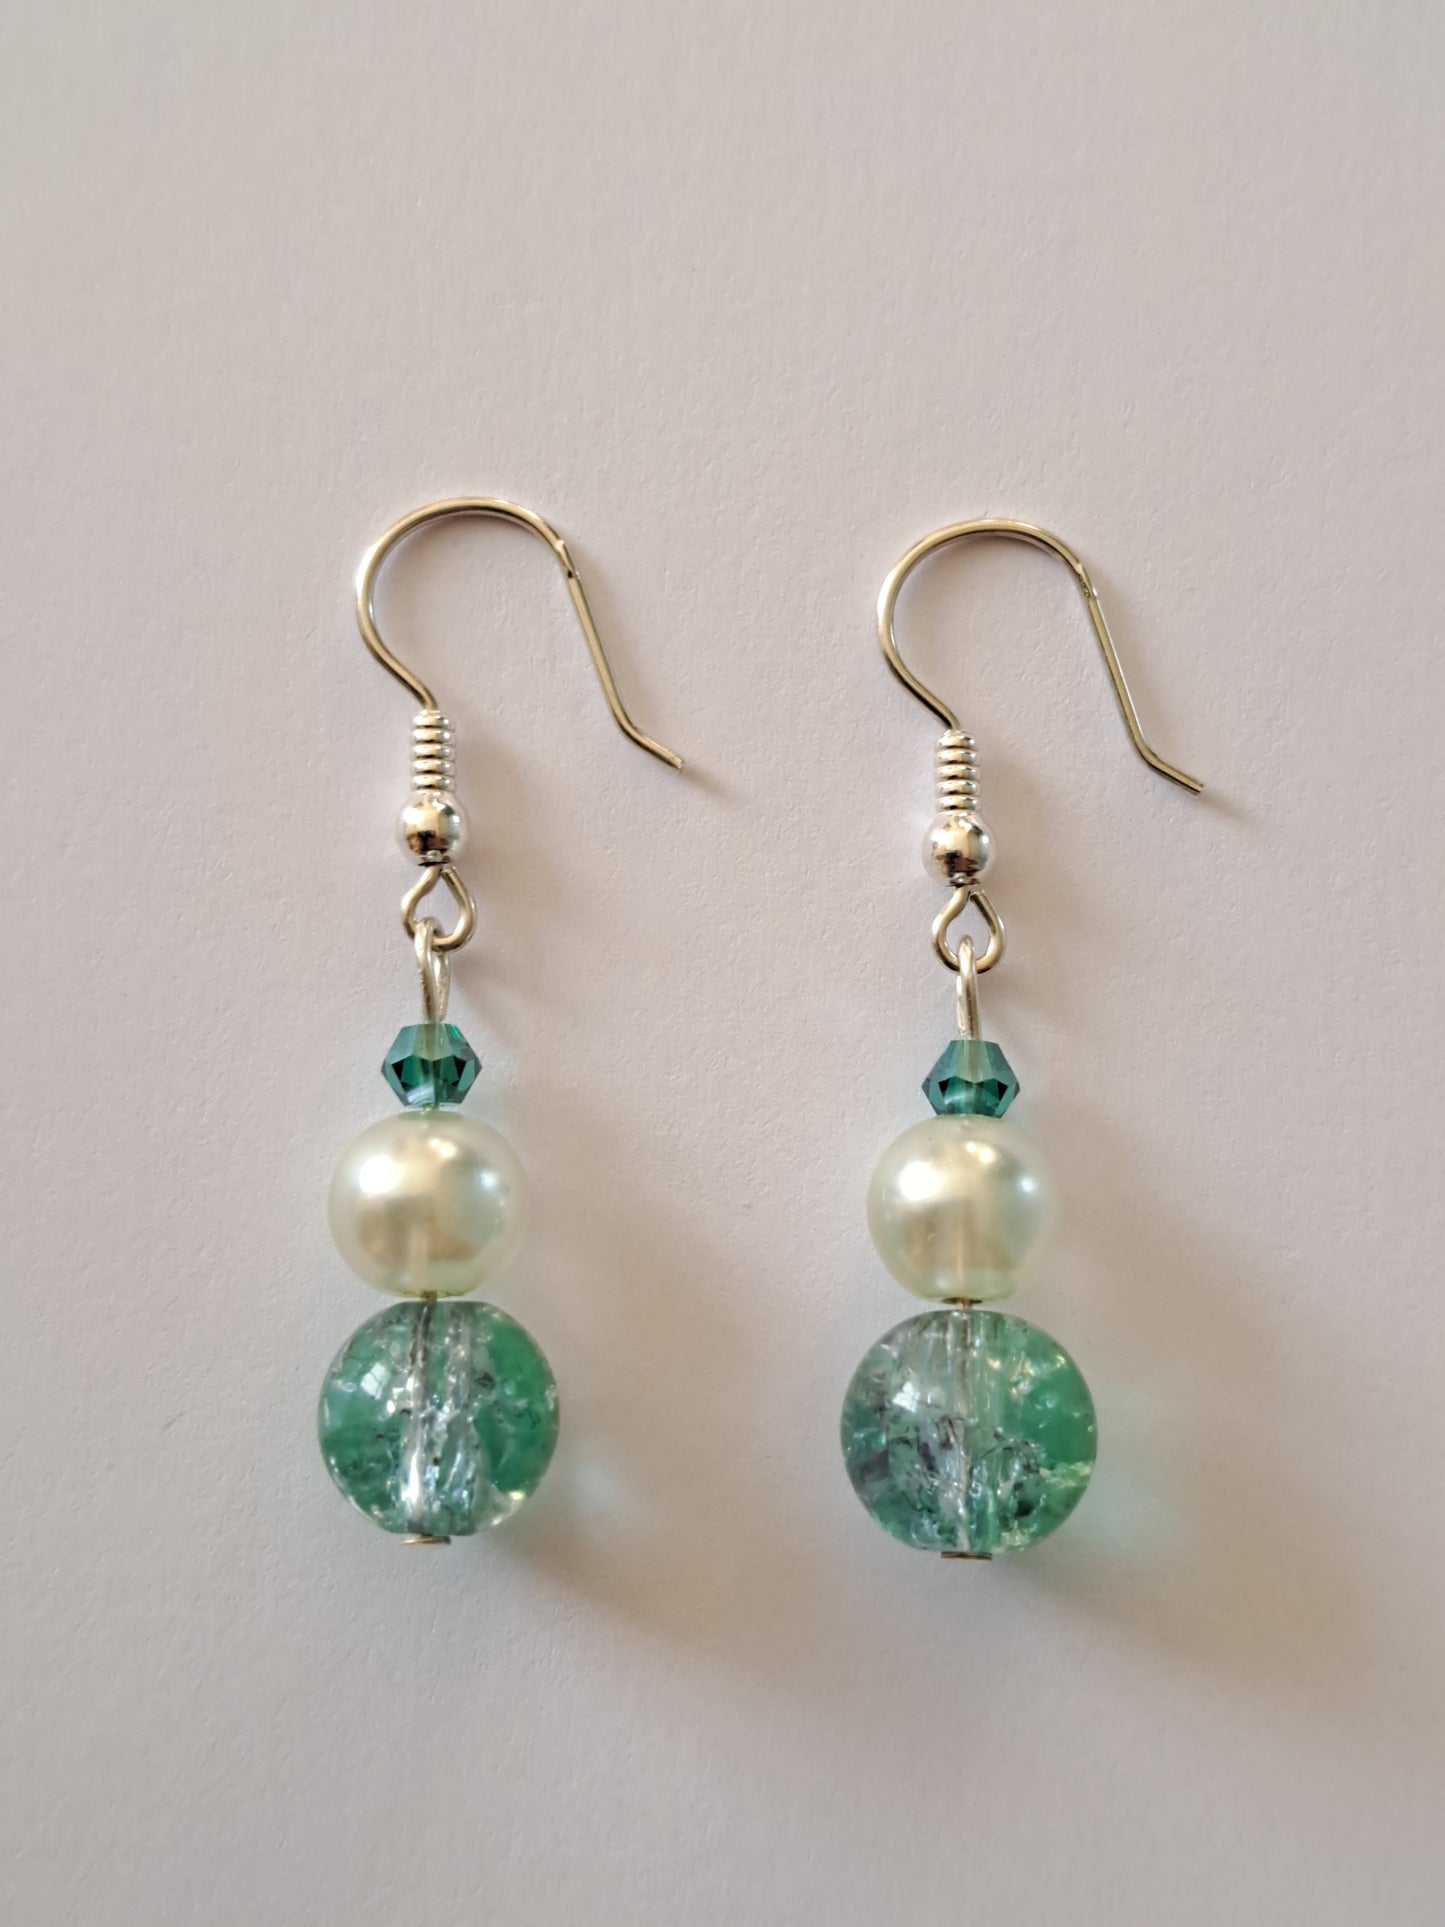 Boucles d'oreilles en argent avec perles blanches et turquoise. Site de bijoux en ligne. France